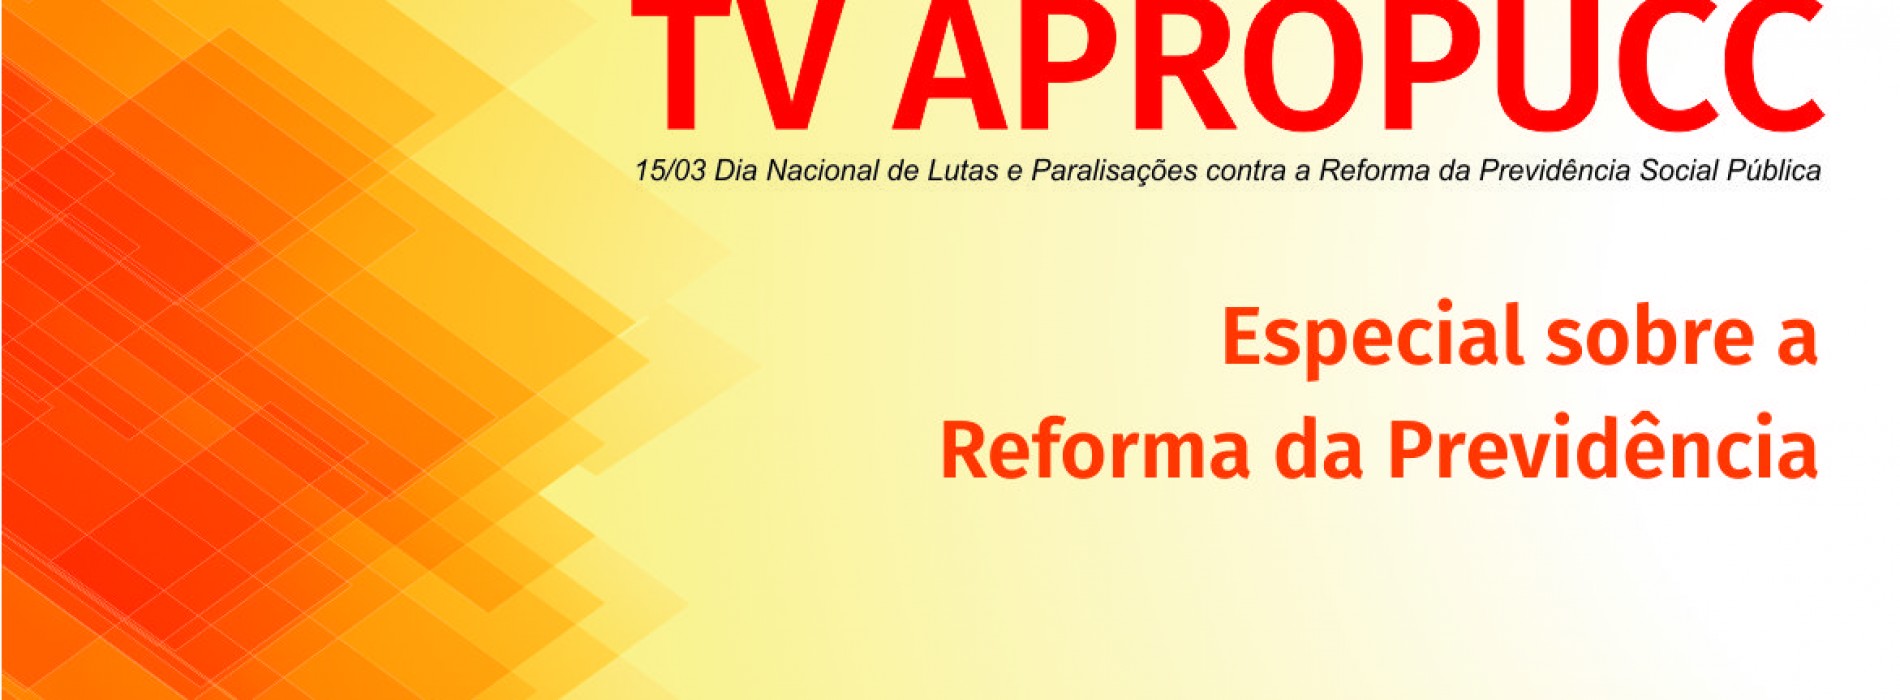 TV Apropucc: Especial sobre a Reforma da Previdência